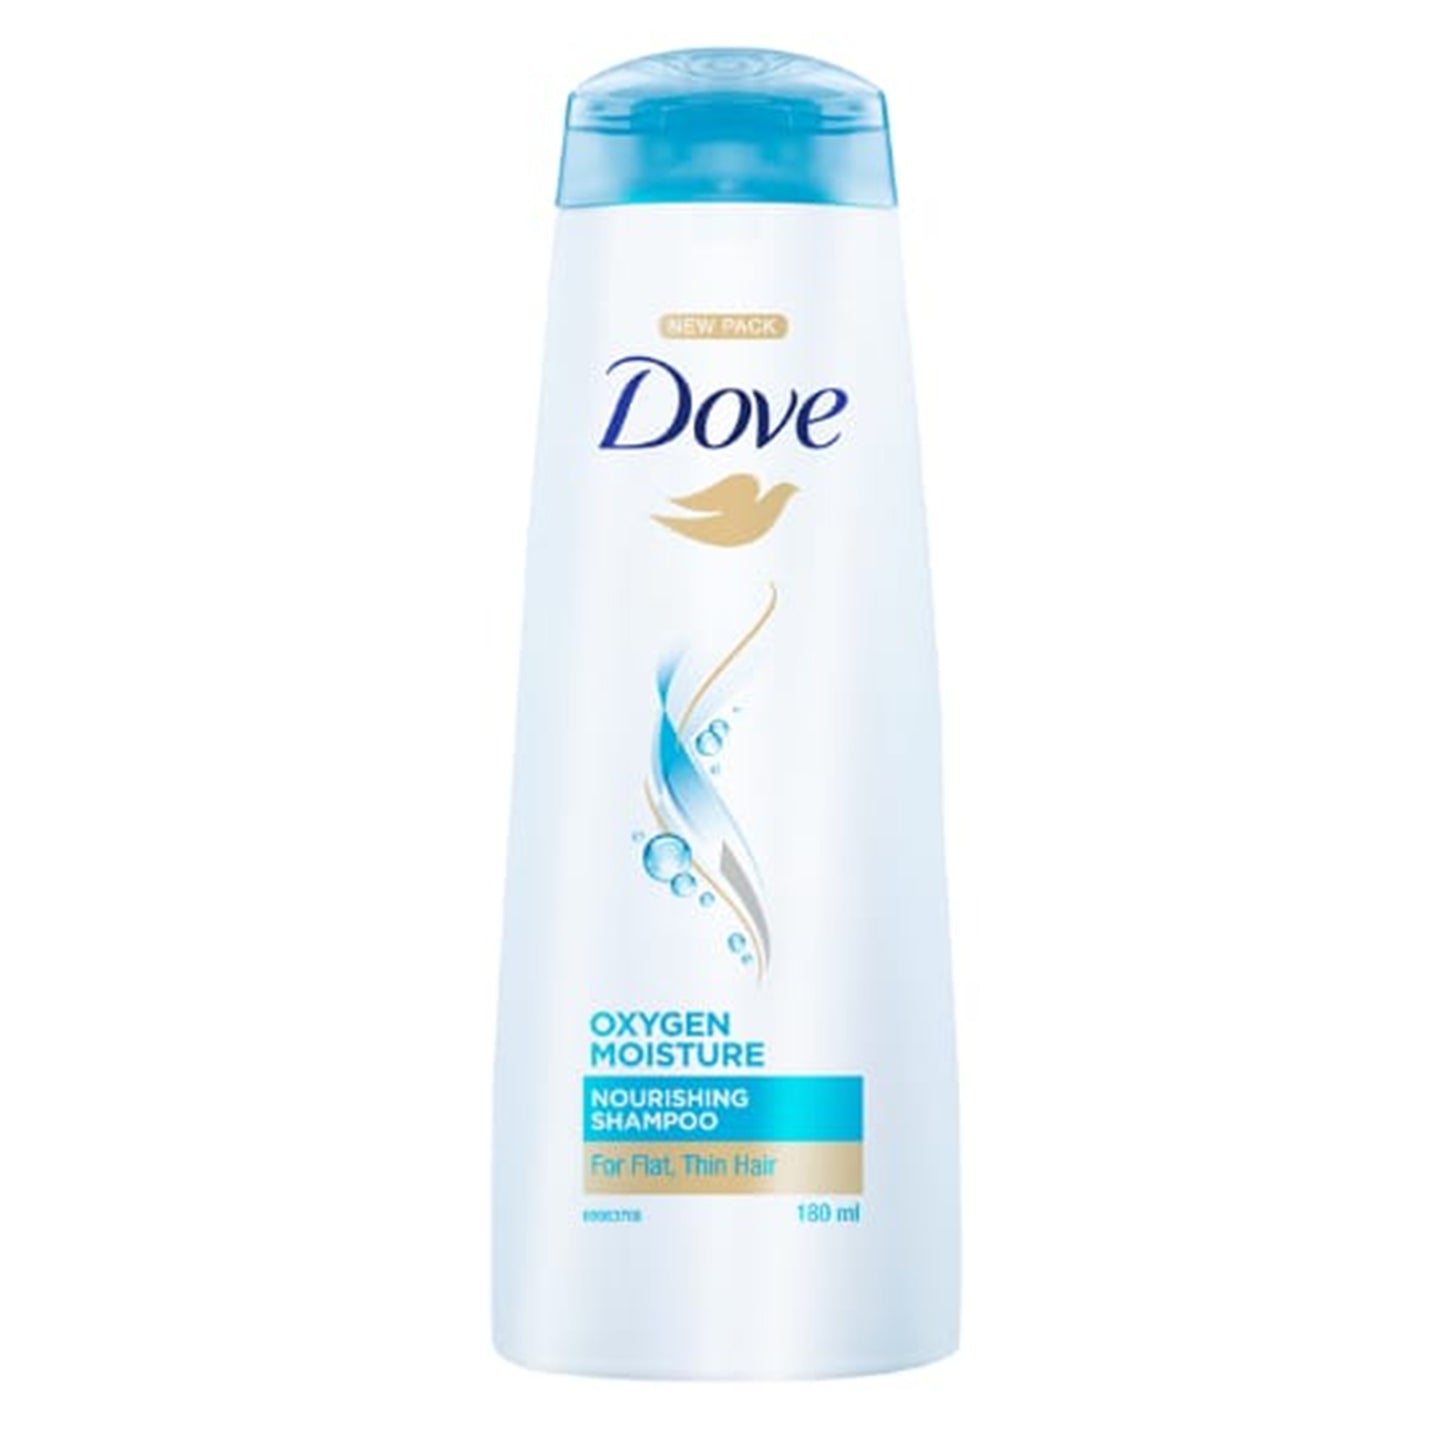 Dove Oxygen Moisture Shampoo (180ml)